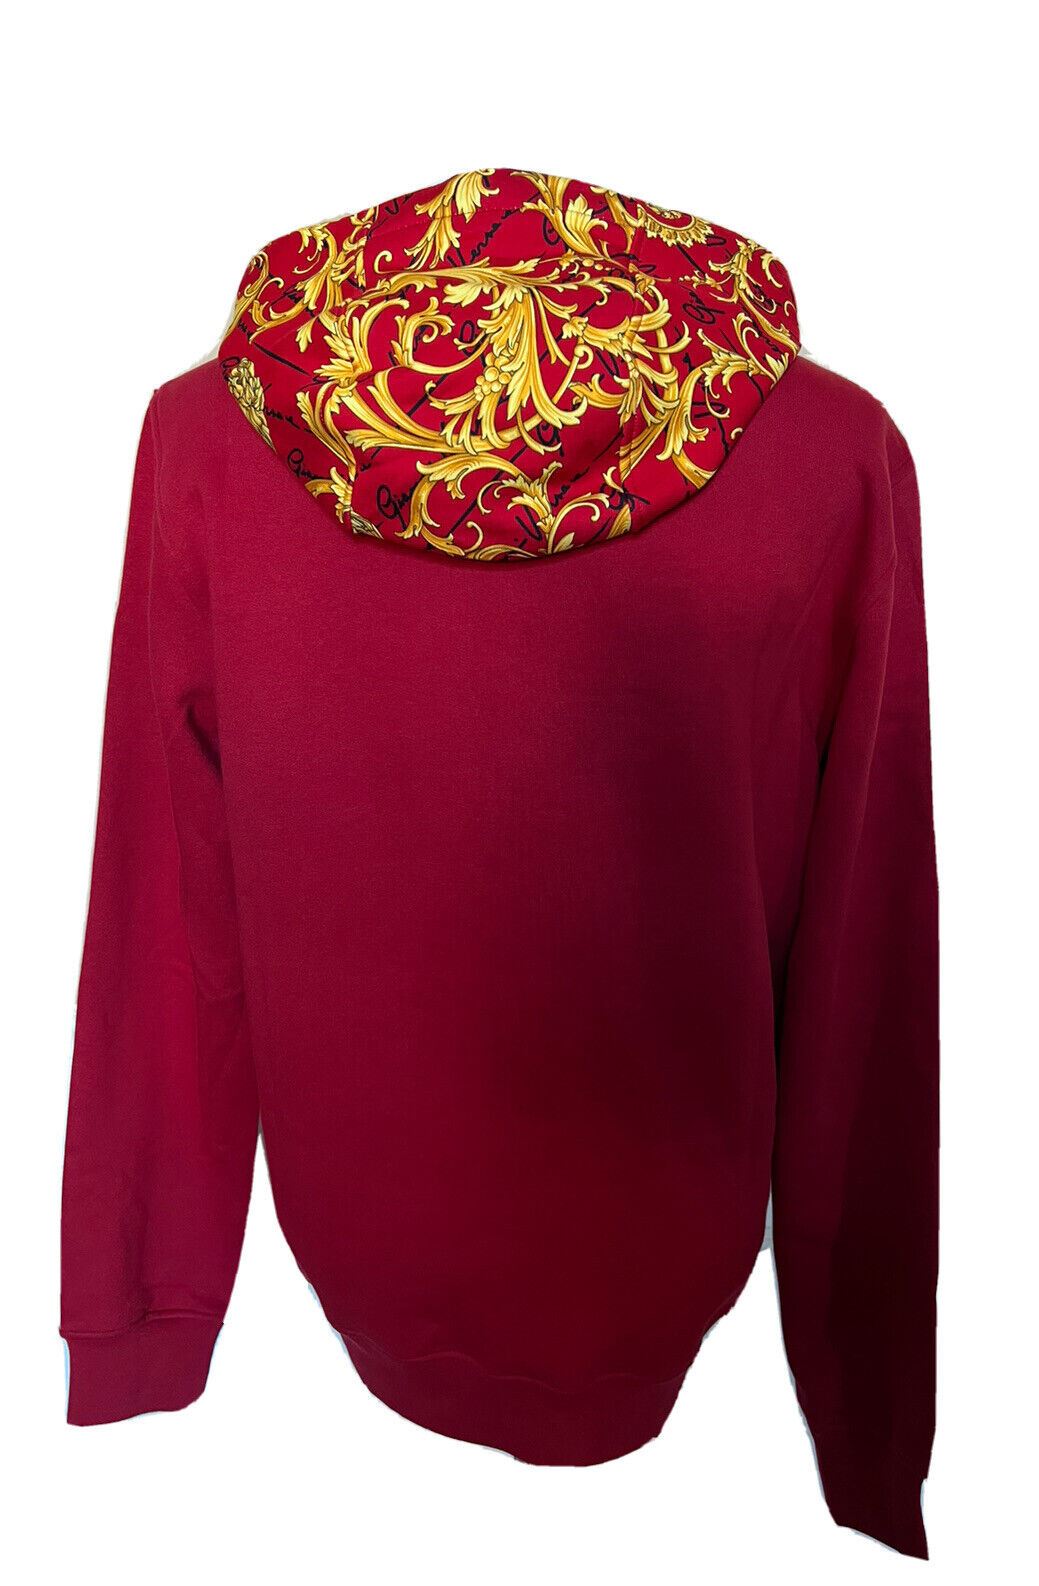 NWT $1150 Versace Толстовка с принтом Medusa Baroque и худи Красный S 1003253 